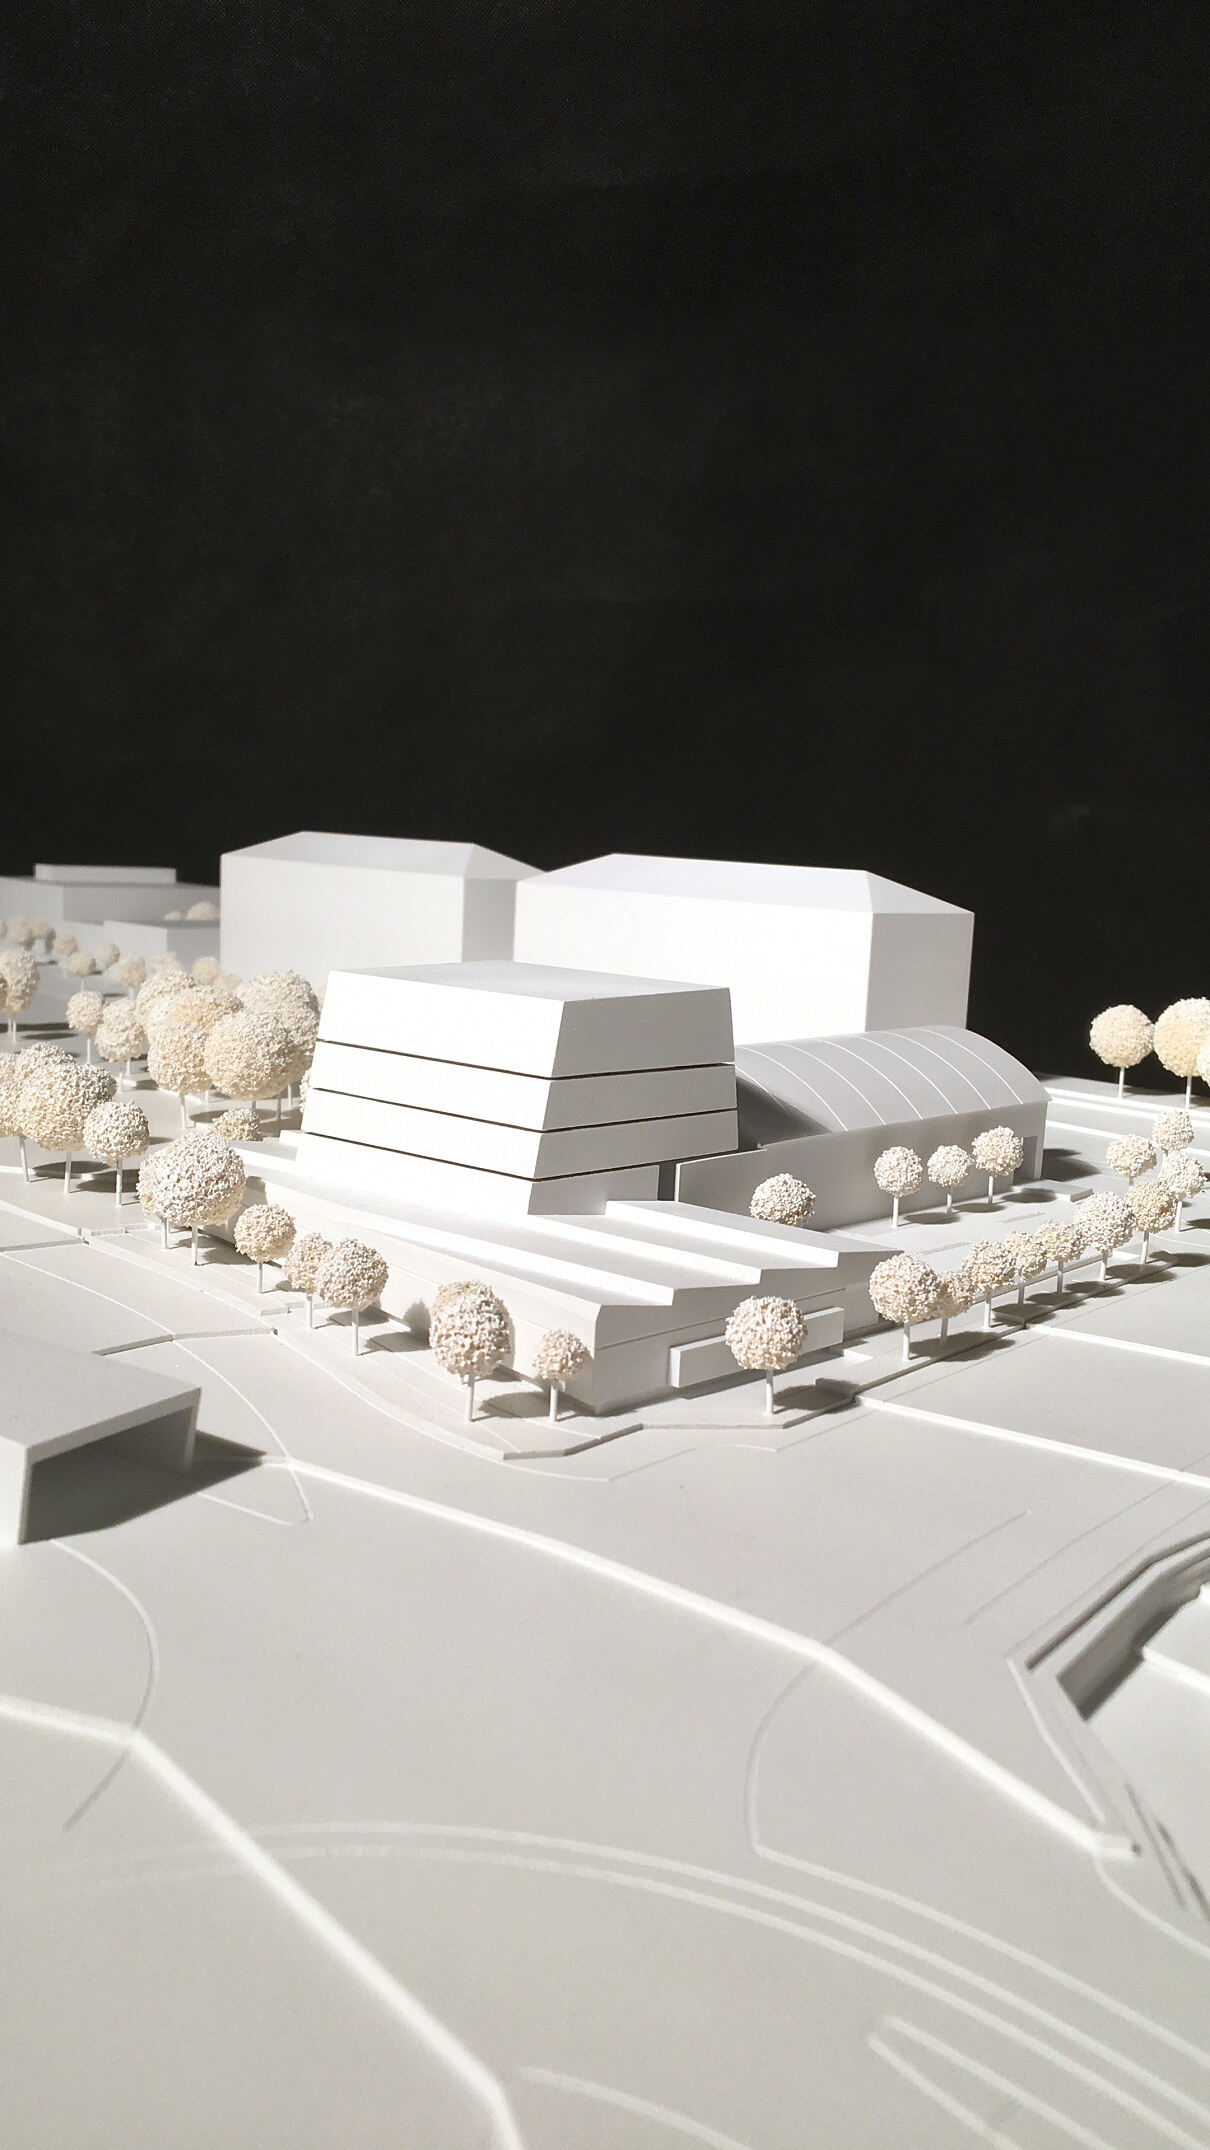 Architekturmodell in der Ballonhalle - Siegerprojekt des Architekturwettbewerbs zum neuen Standort der Akademie der bildenden Künste Wien